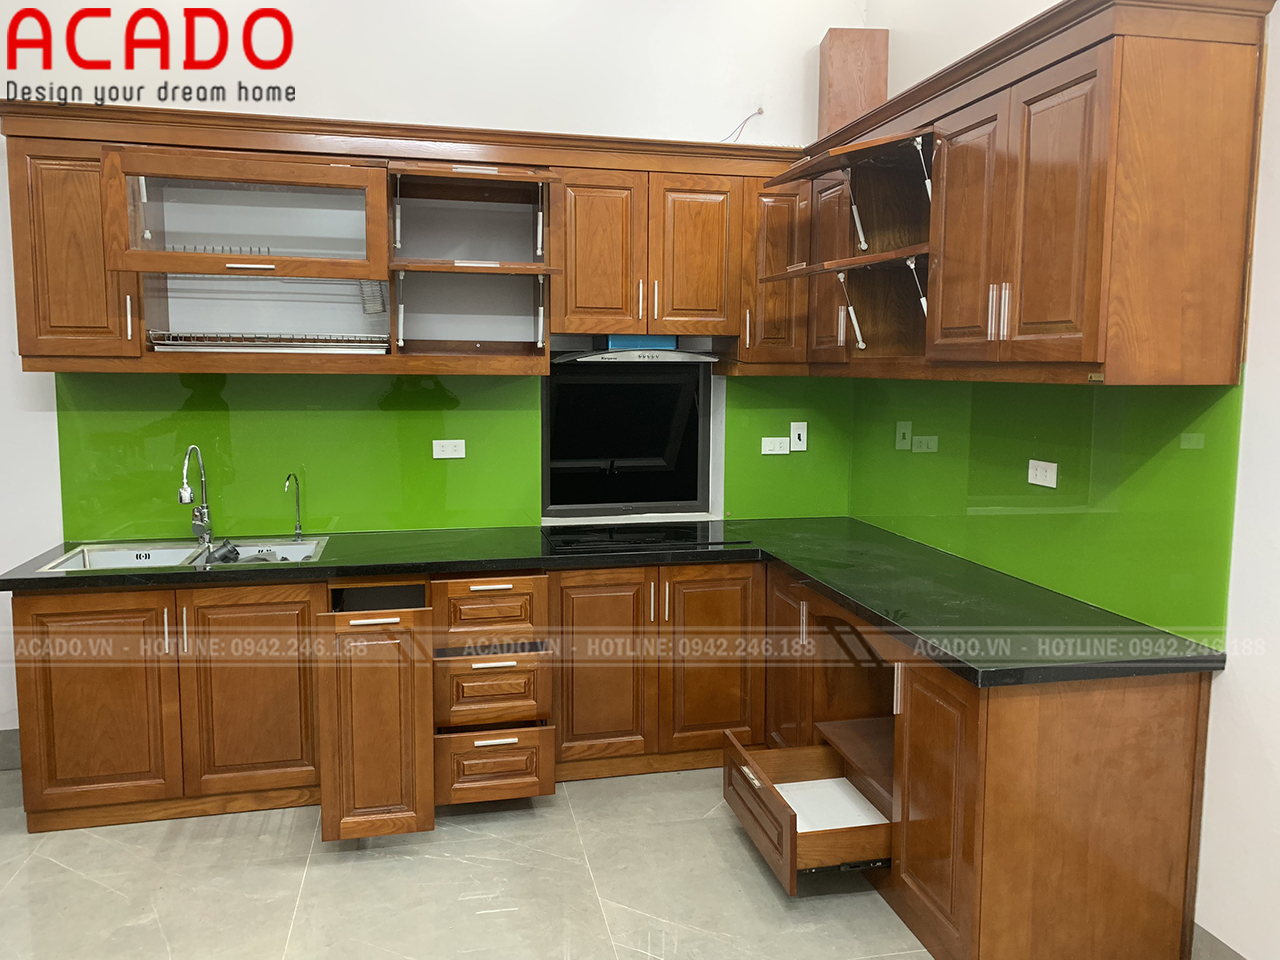 Với thiết kế thông minh, hiện đại tủ bếp ACADO luôn được khách hàng lựa chọn